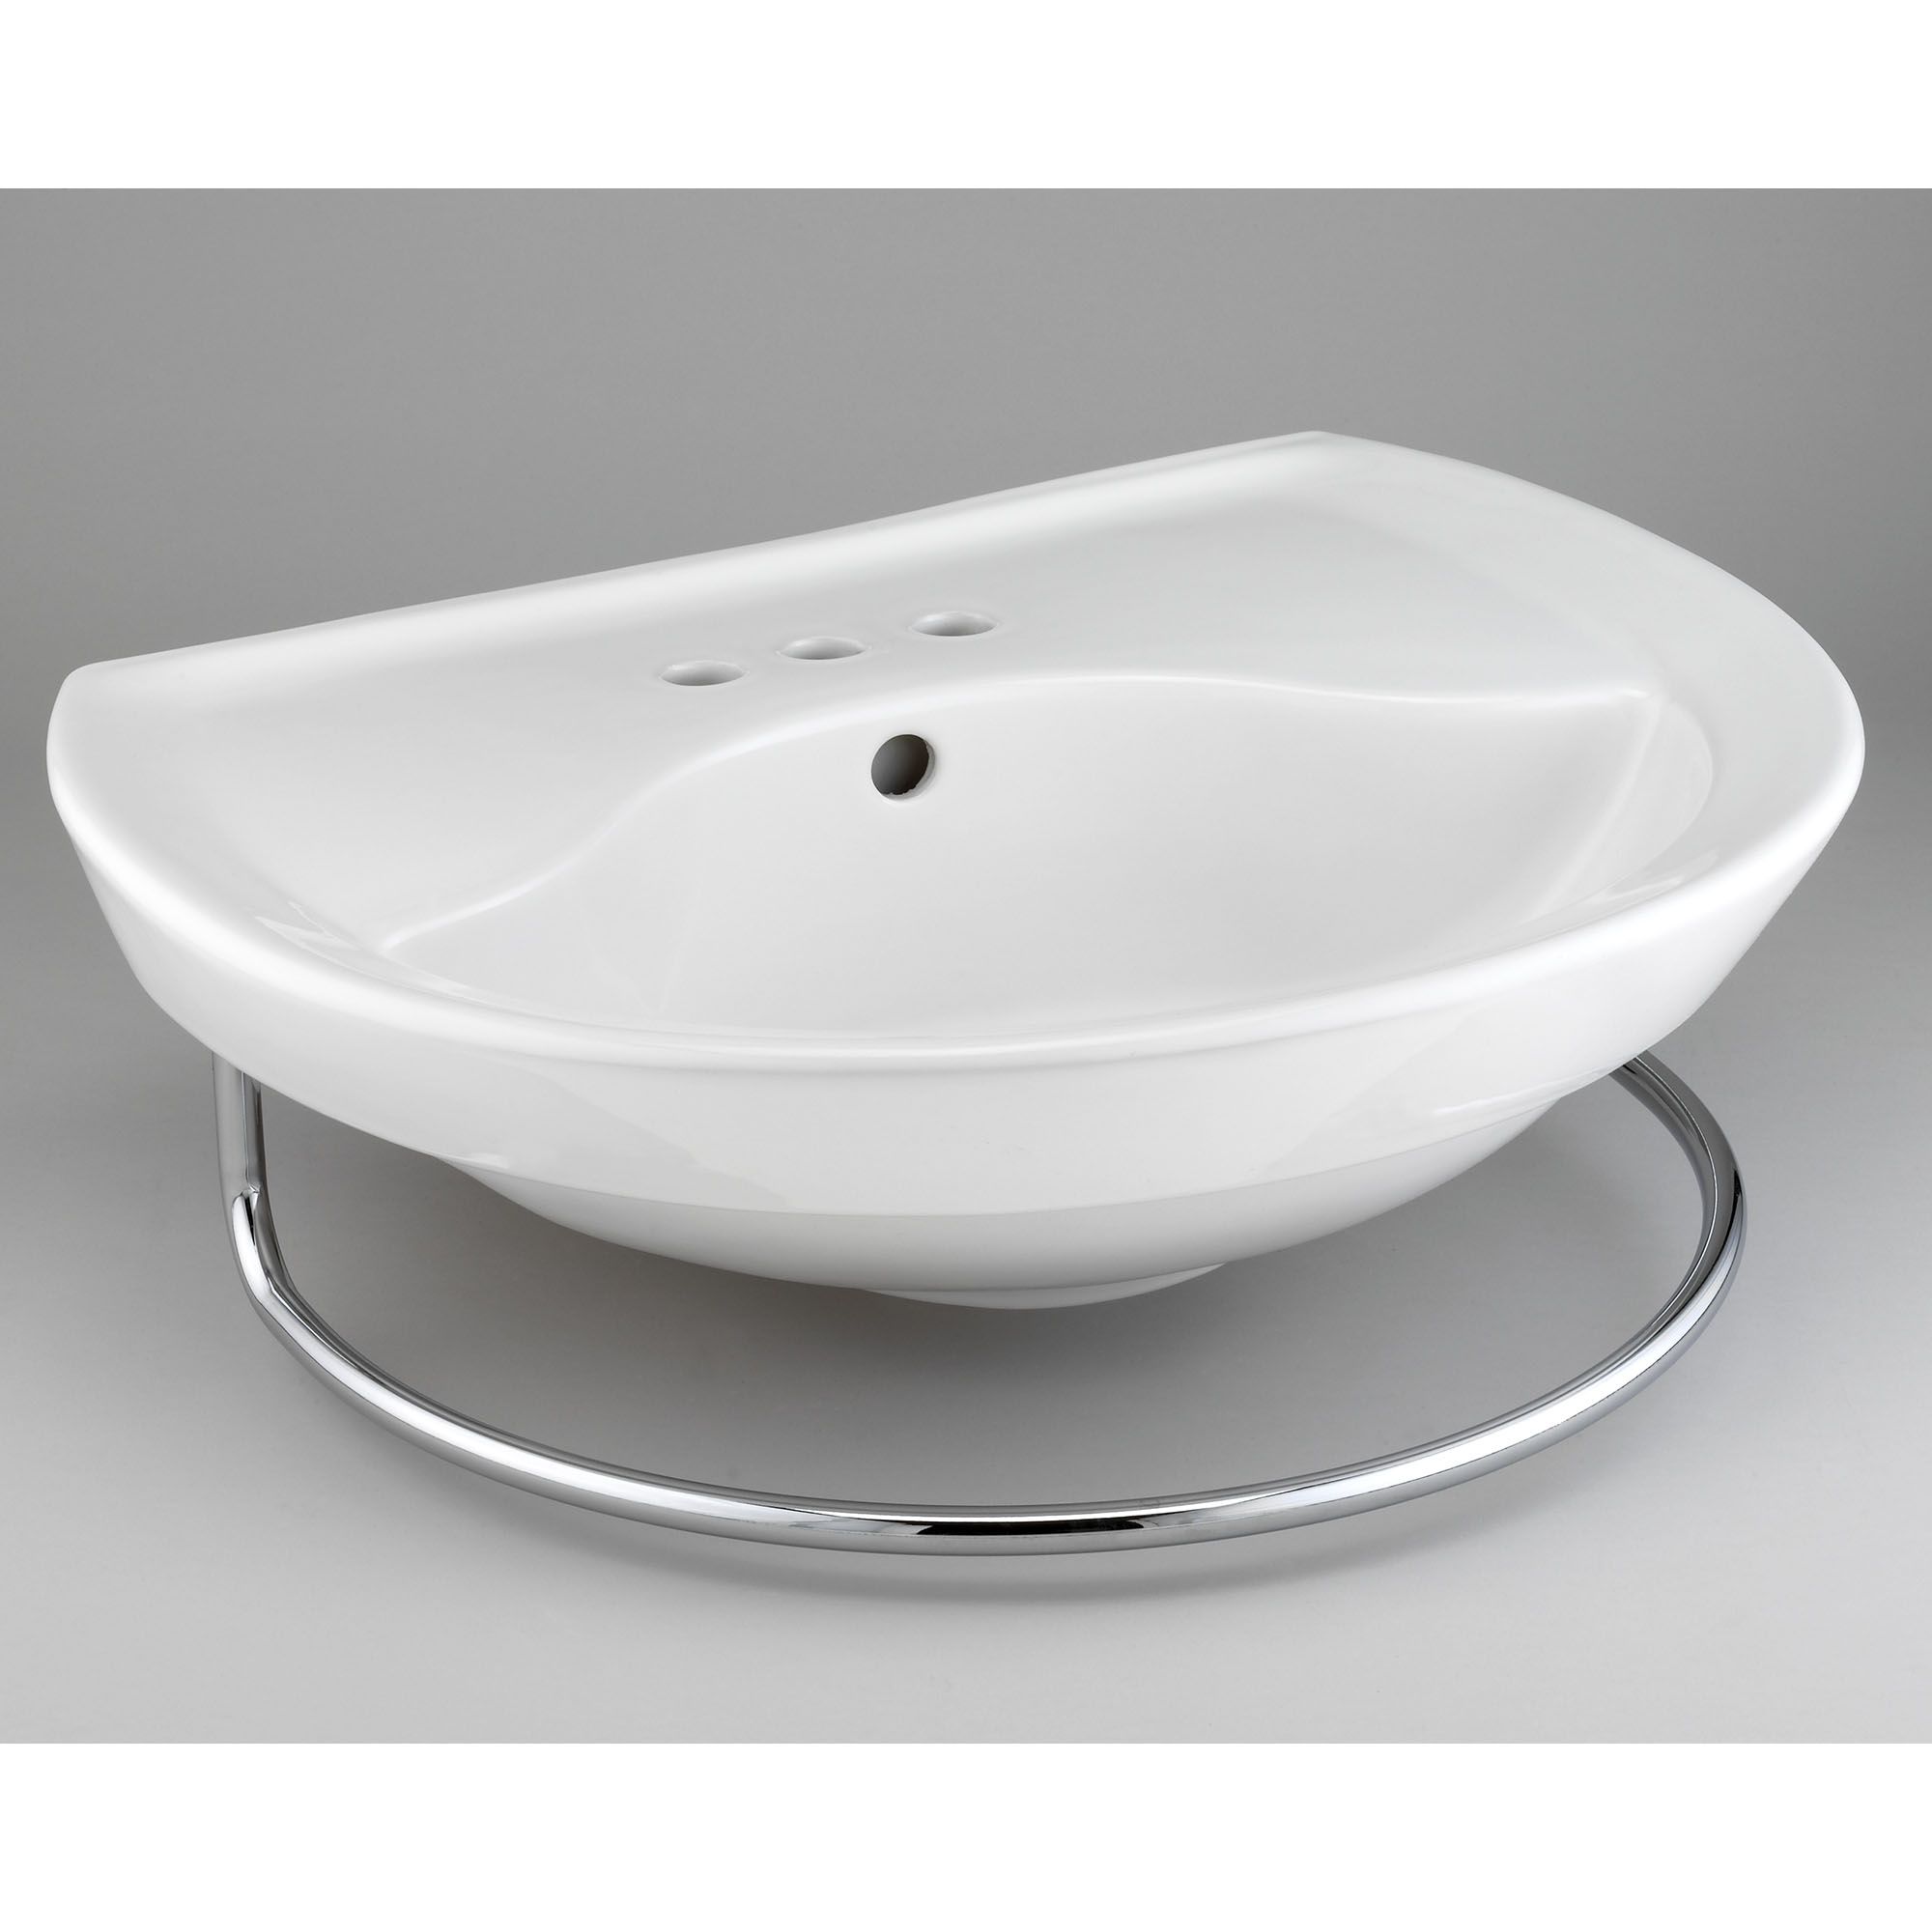 Ravenna™ 4-Inch Centerset Pedestal Sink Top